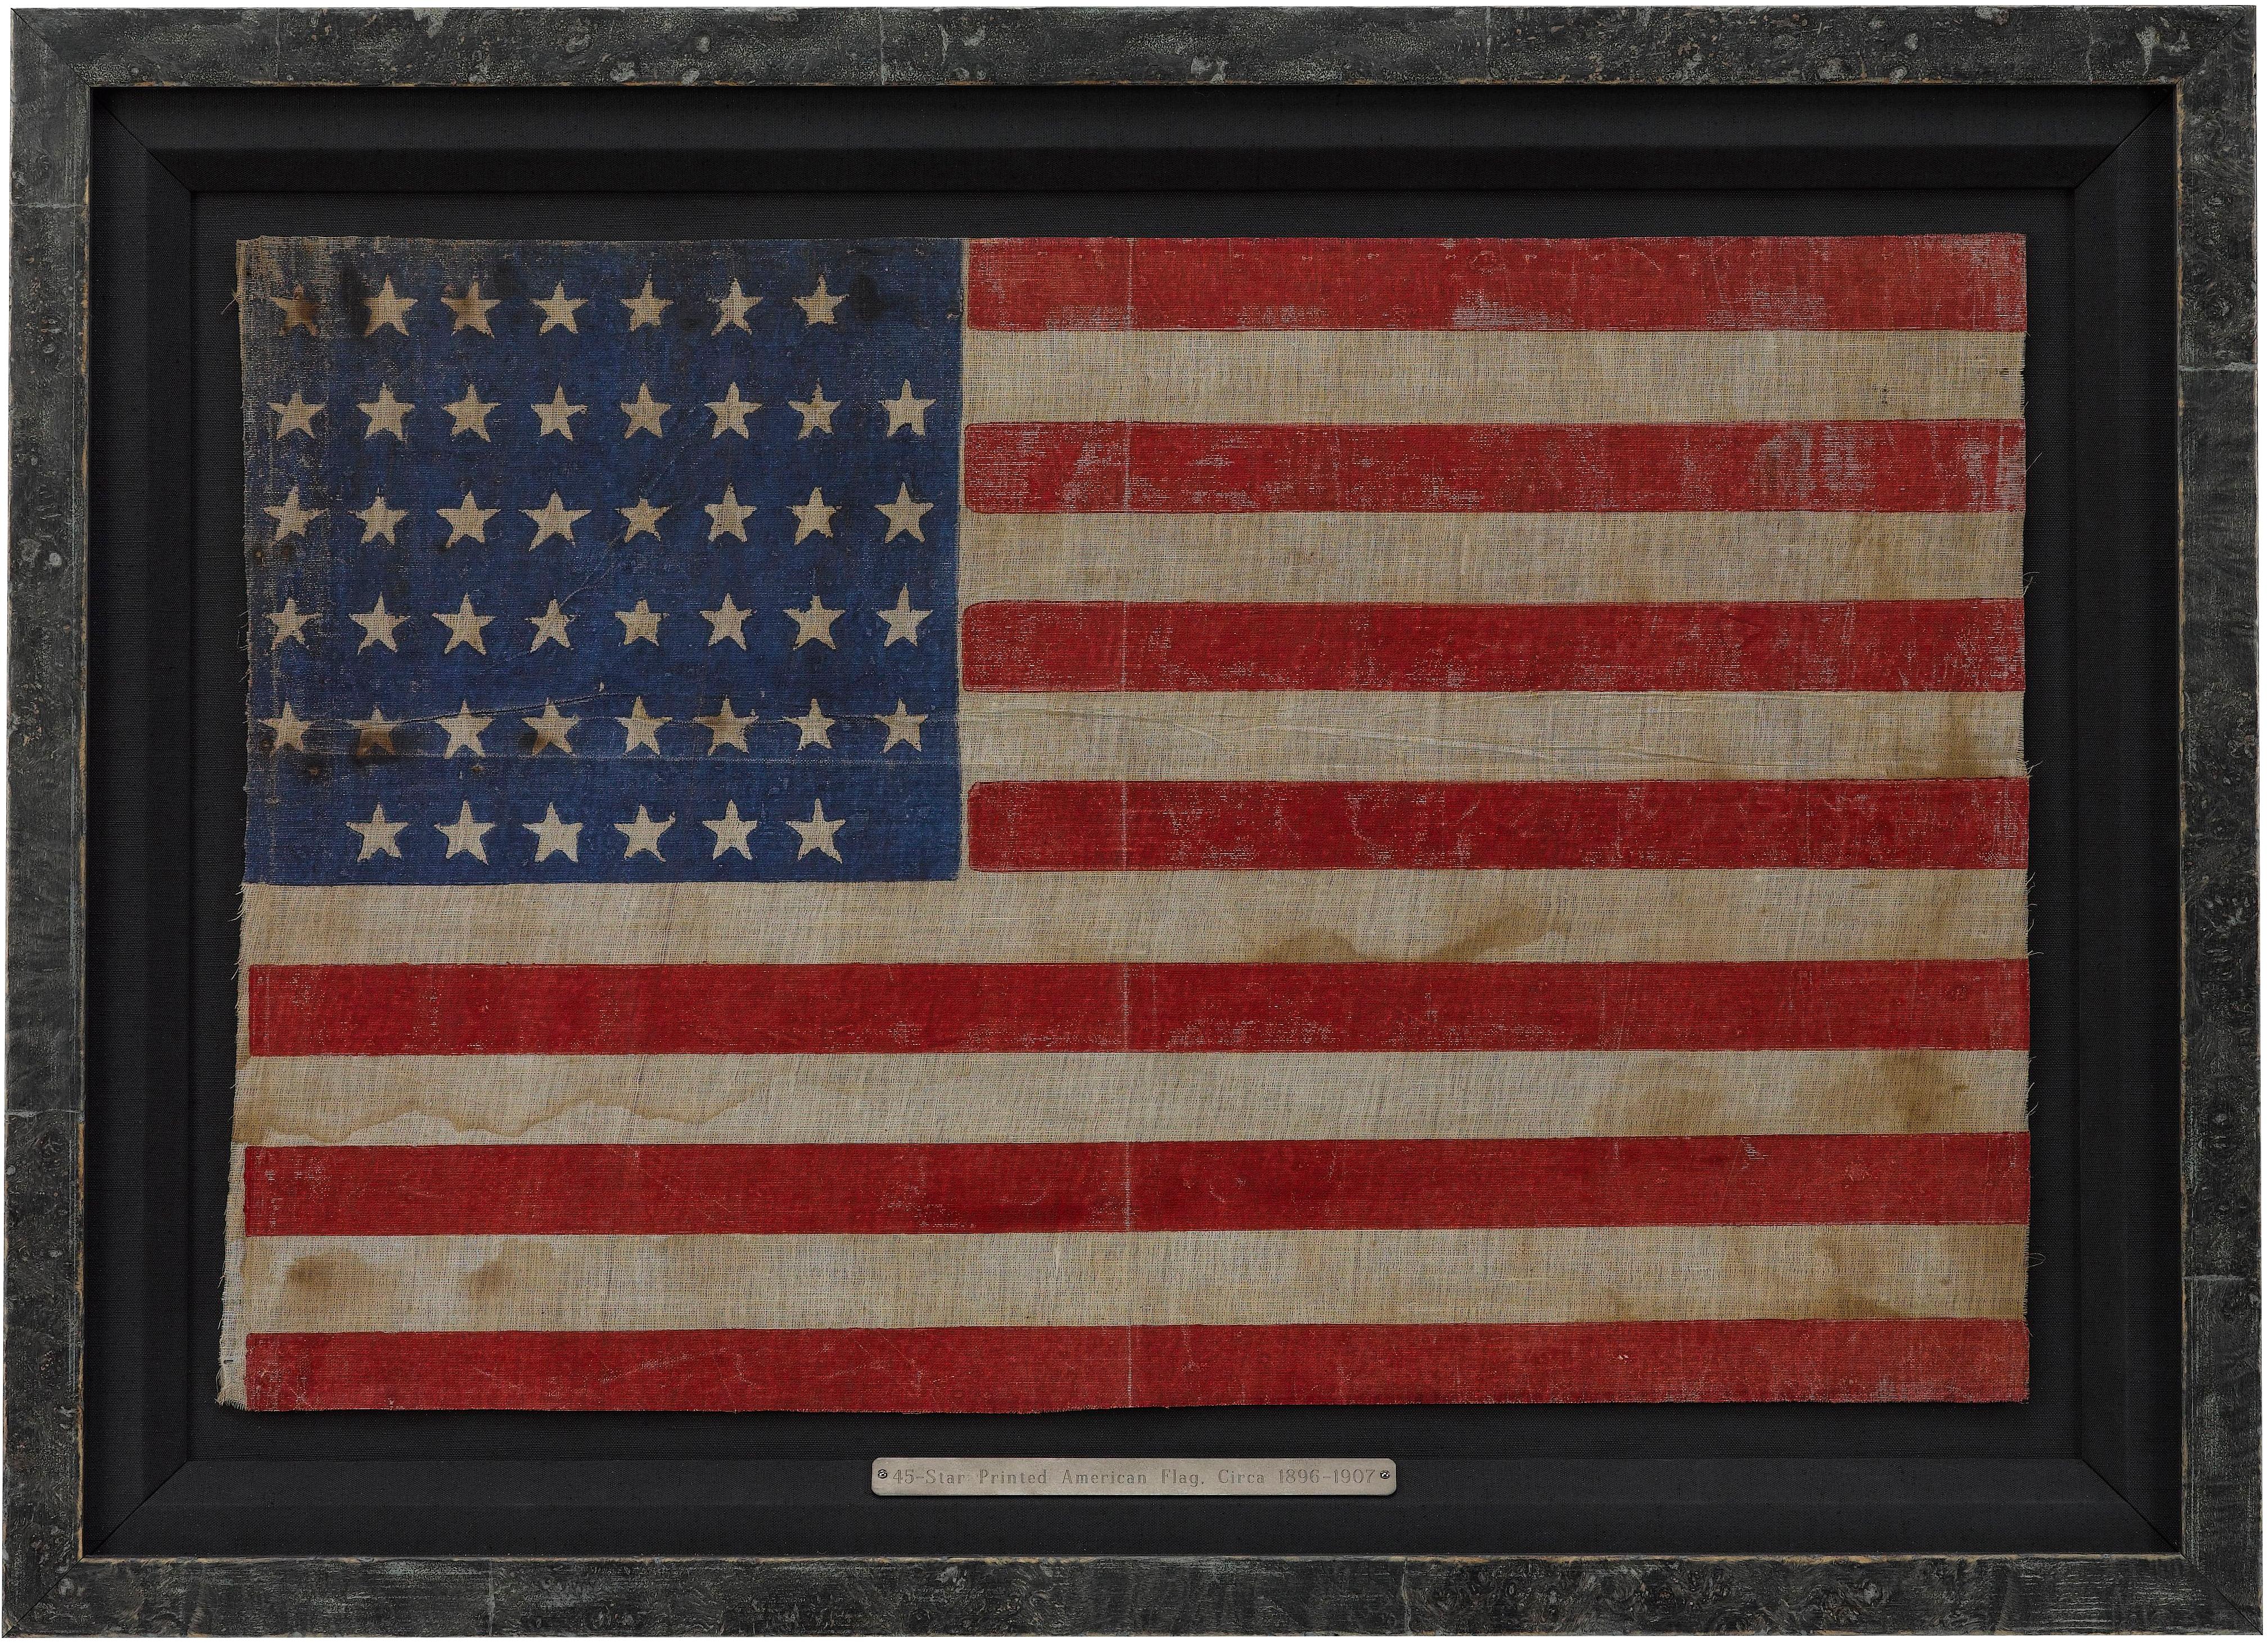 Ce drapeau américain à 45 étoiles célèbre la création de l'État d'Utah. les drapeaux à 45 étoiles ont servi de drapeau américain officiel de 1896 à 1908. Le drapeau est imprimé sur une mousseline et était utilisé comme drapeau de parade. Les étoiles